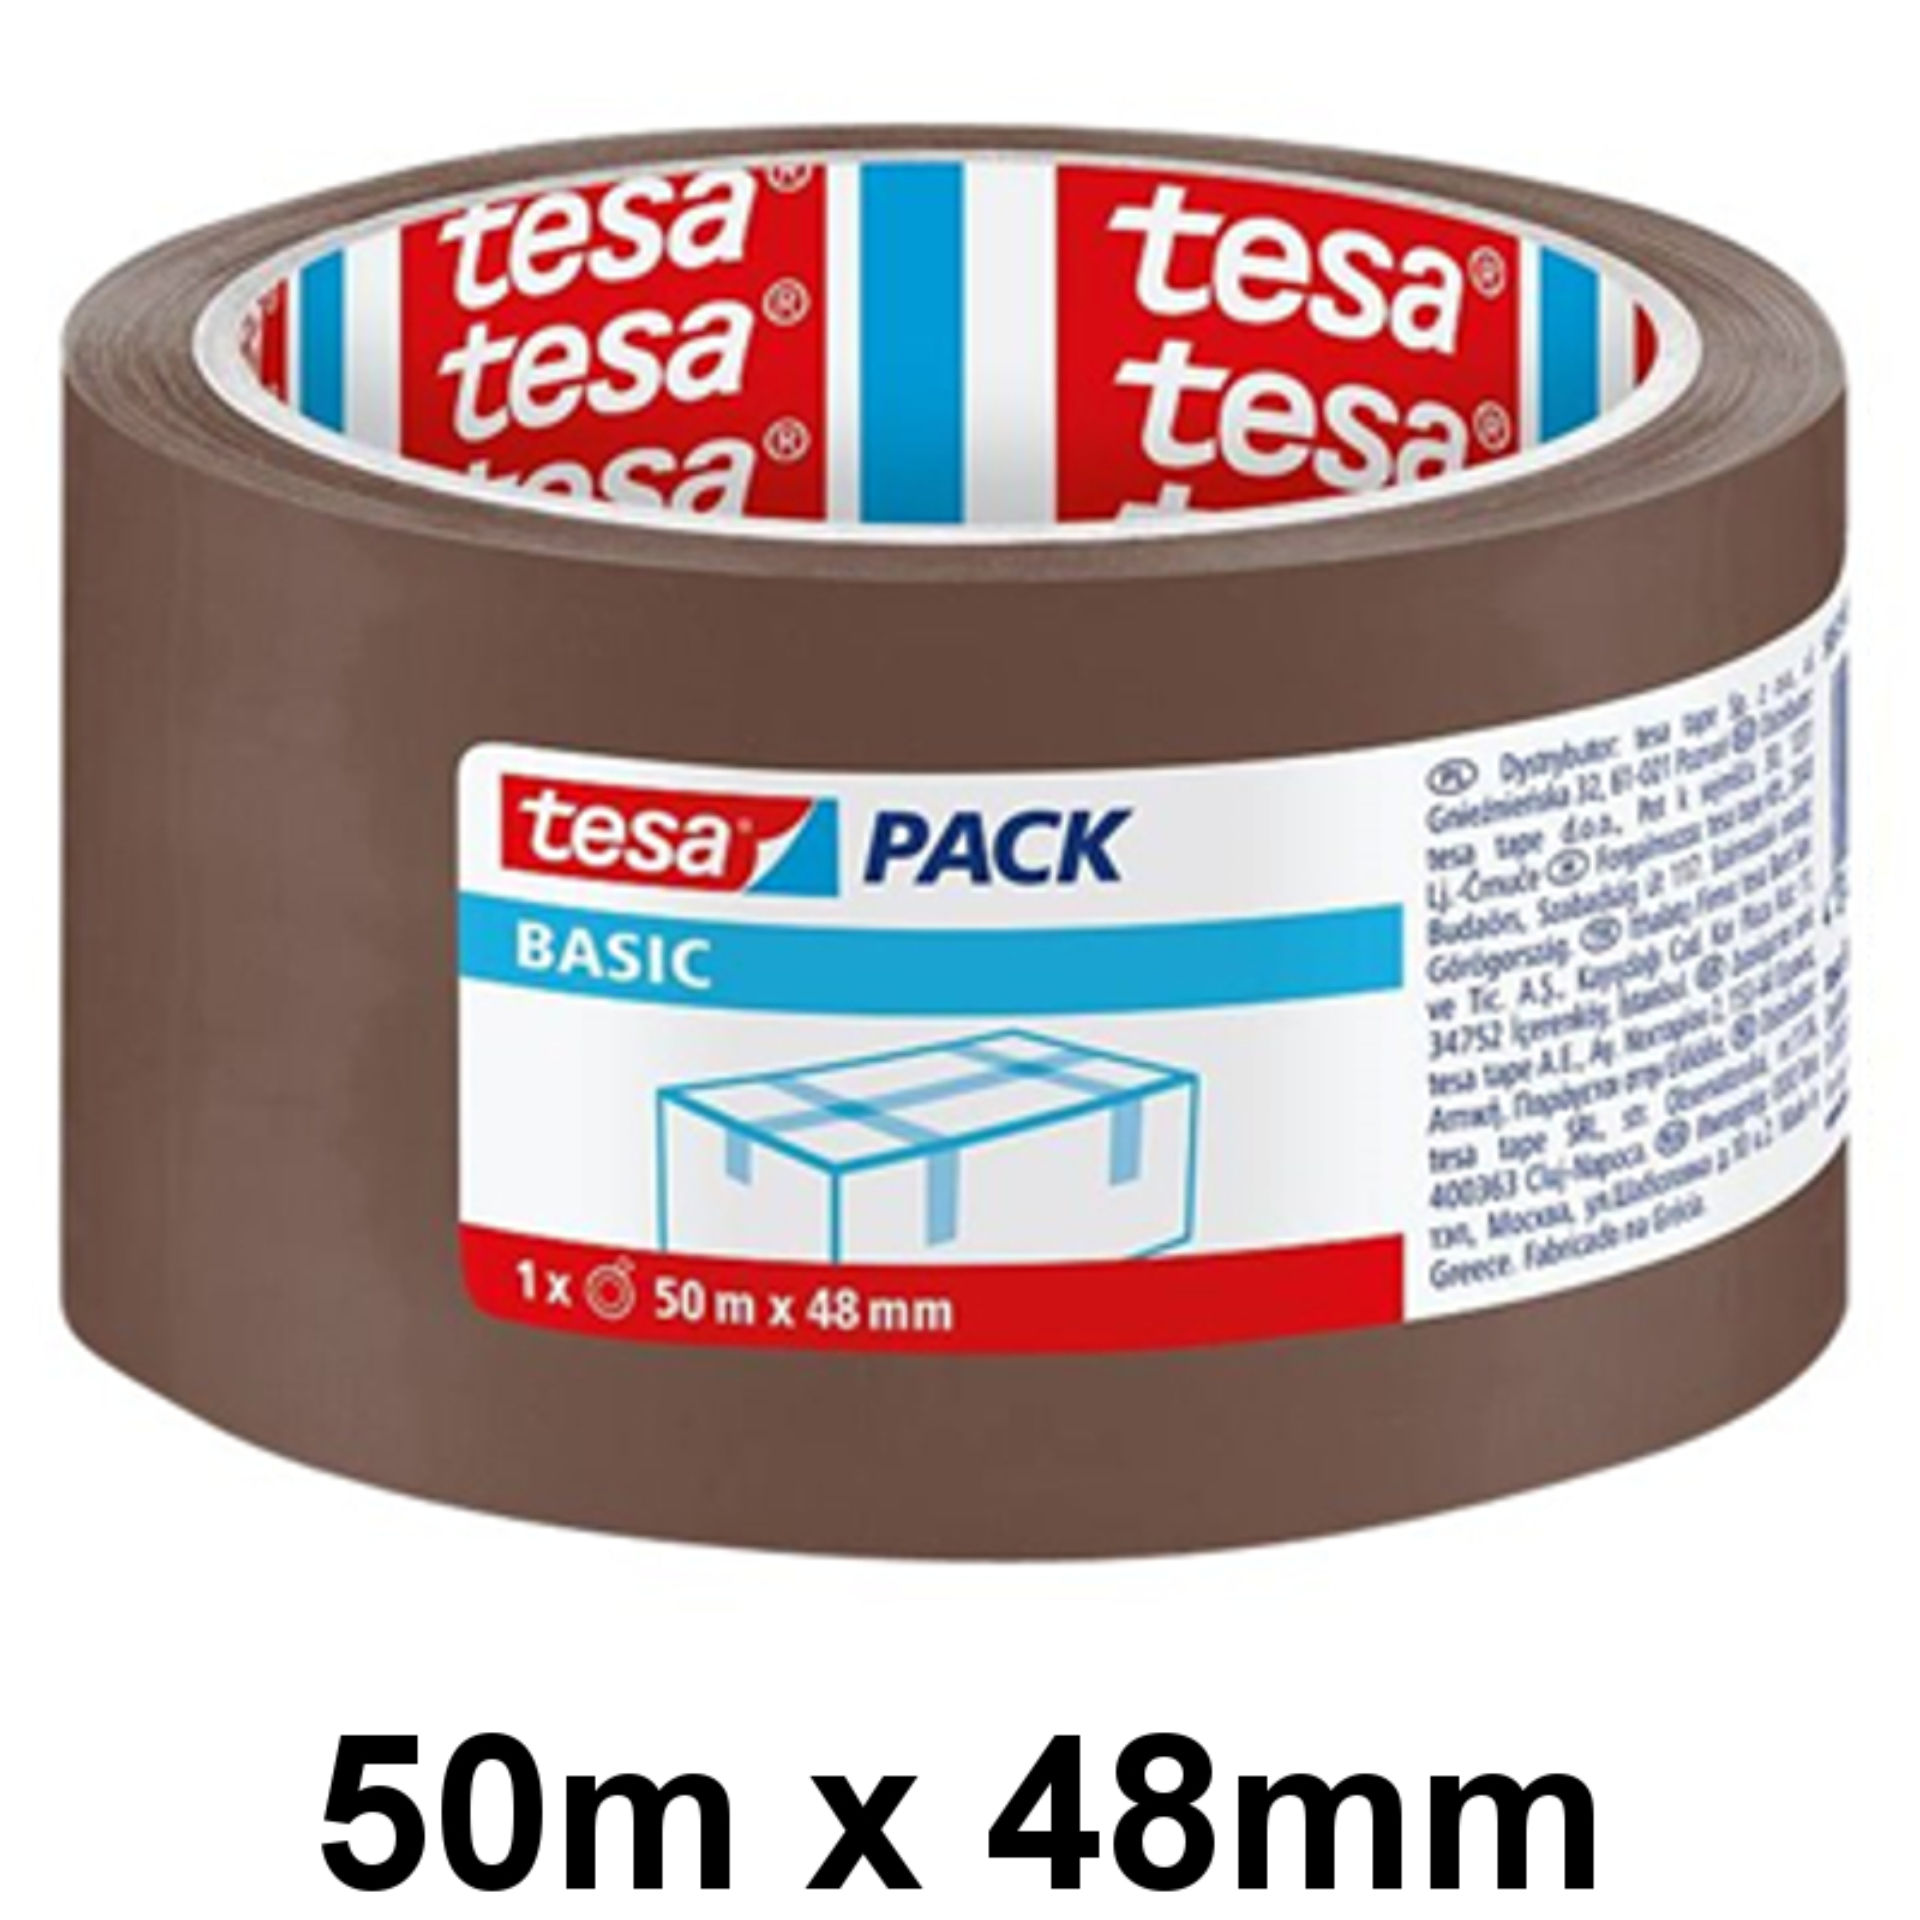 TESA BASIC NASTRO 50M X 48MM (58573)Tesa